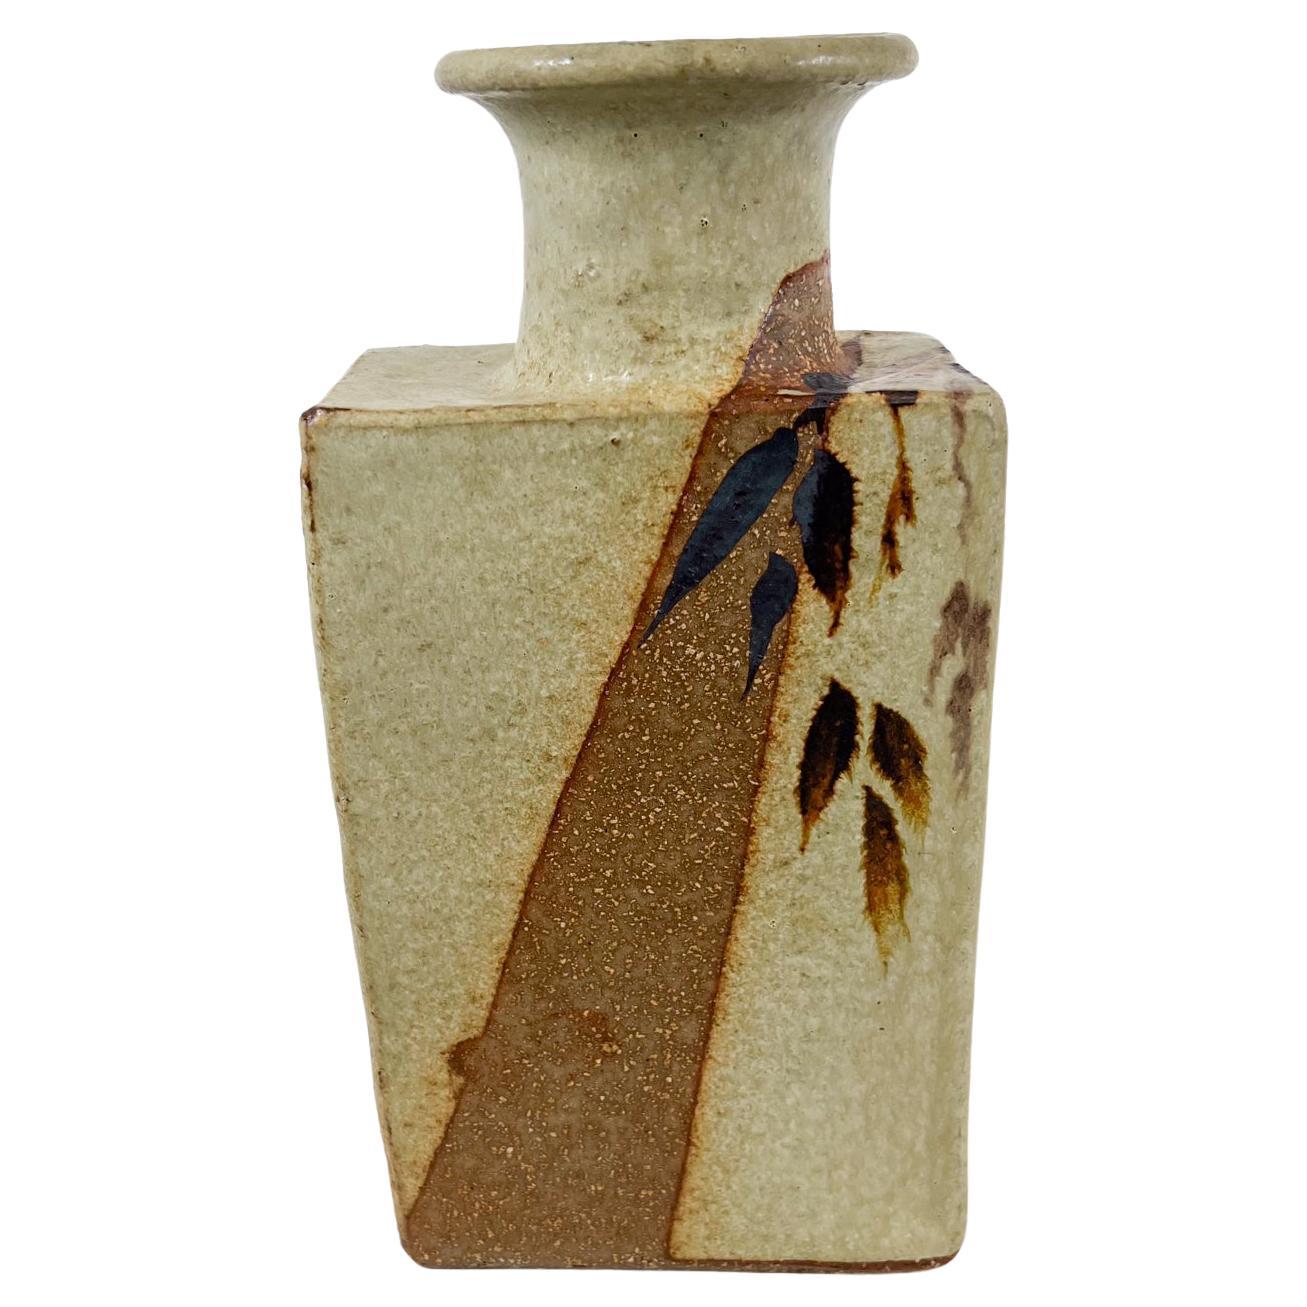 1970s Japanese Studio Flower Art Vase Rectangular Ceramic Pottery